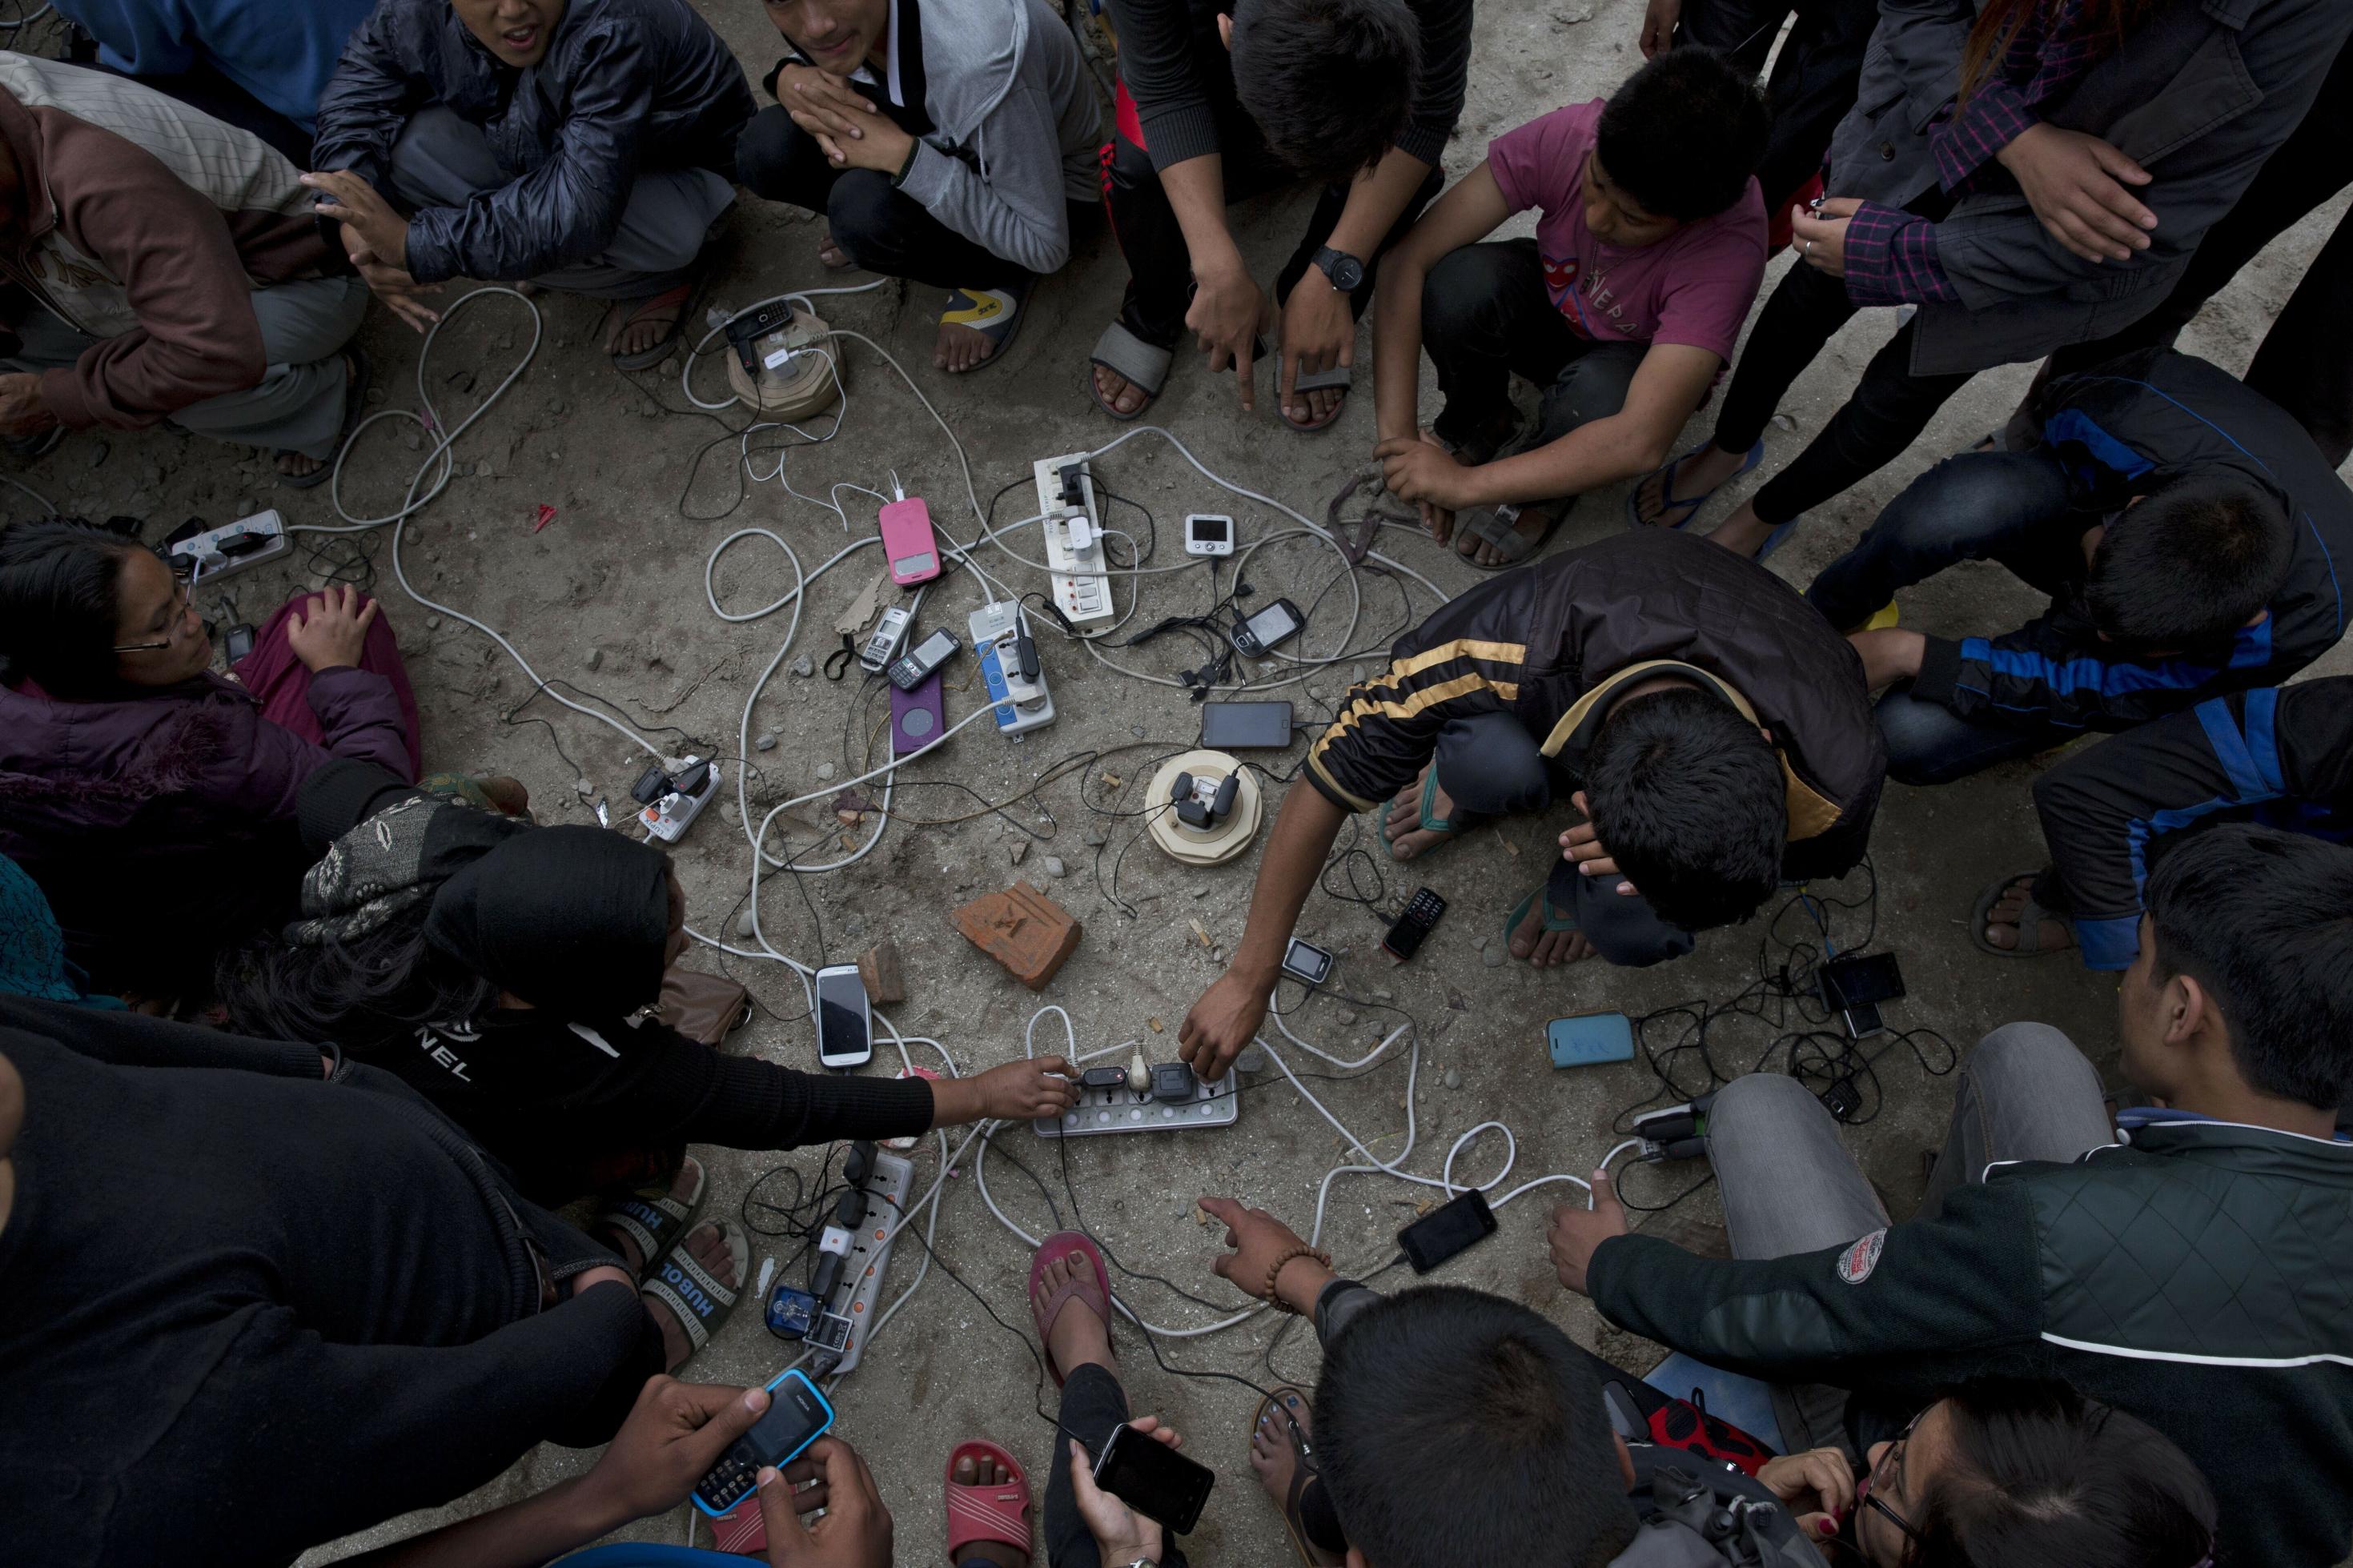 Nach einem Erdbeben im April 2015 luden Dorfbewohner ihre Mobiltelefone auf einer Freifläche in Kathmandu, Nepal. Sie suchten in der erdbebengeschädigten Stadt nach ihren verlorenen Angehörigen.
Das Bild zeigt mehrere Menschen um Handys, die an mehreren Steckern geladen werden.